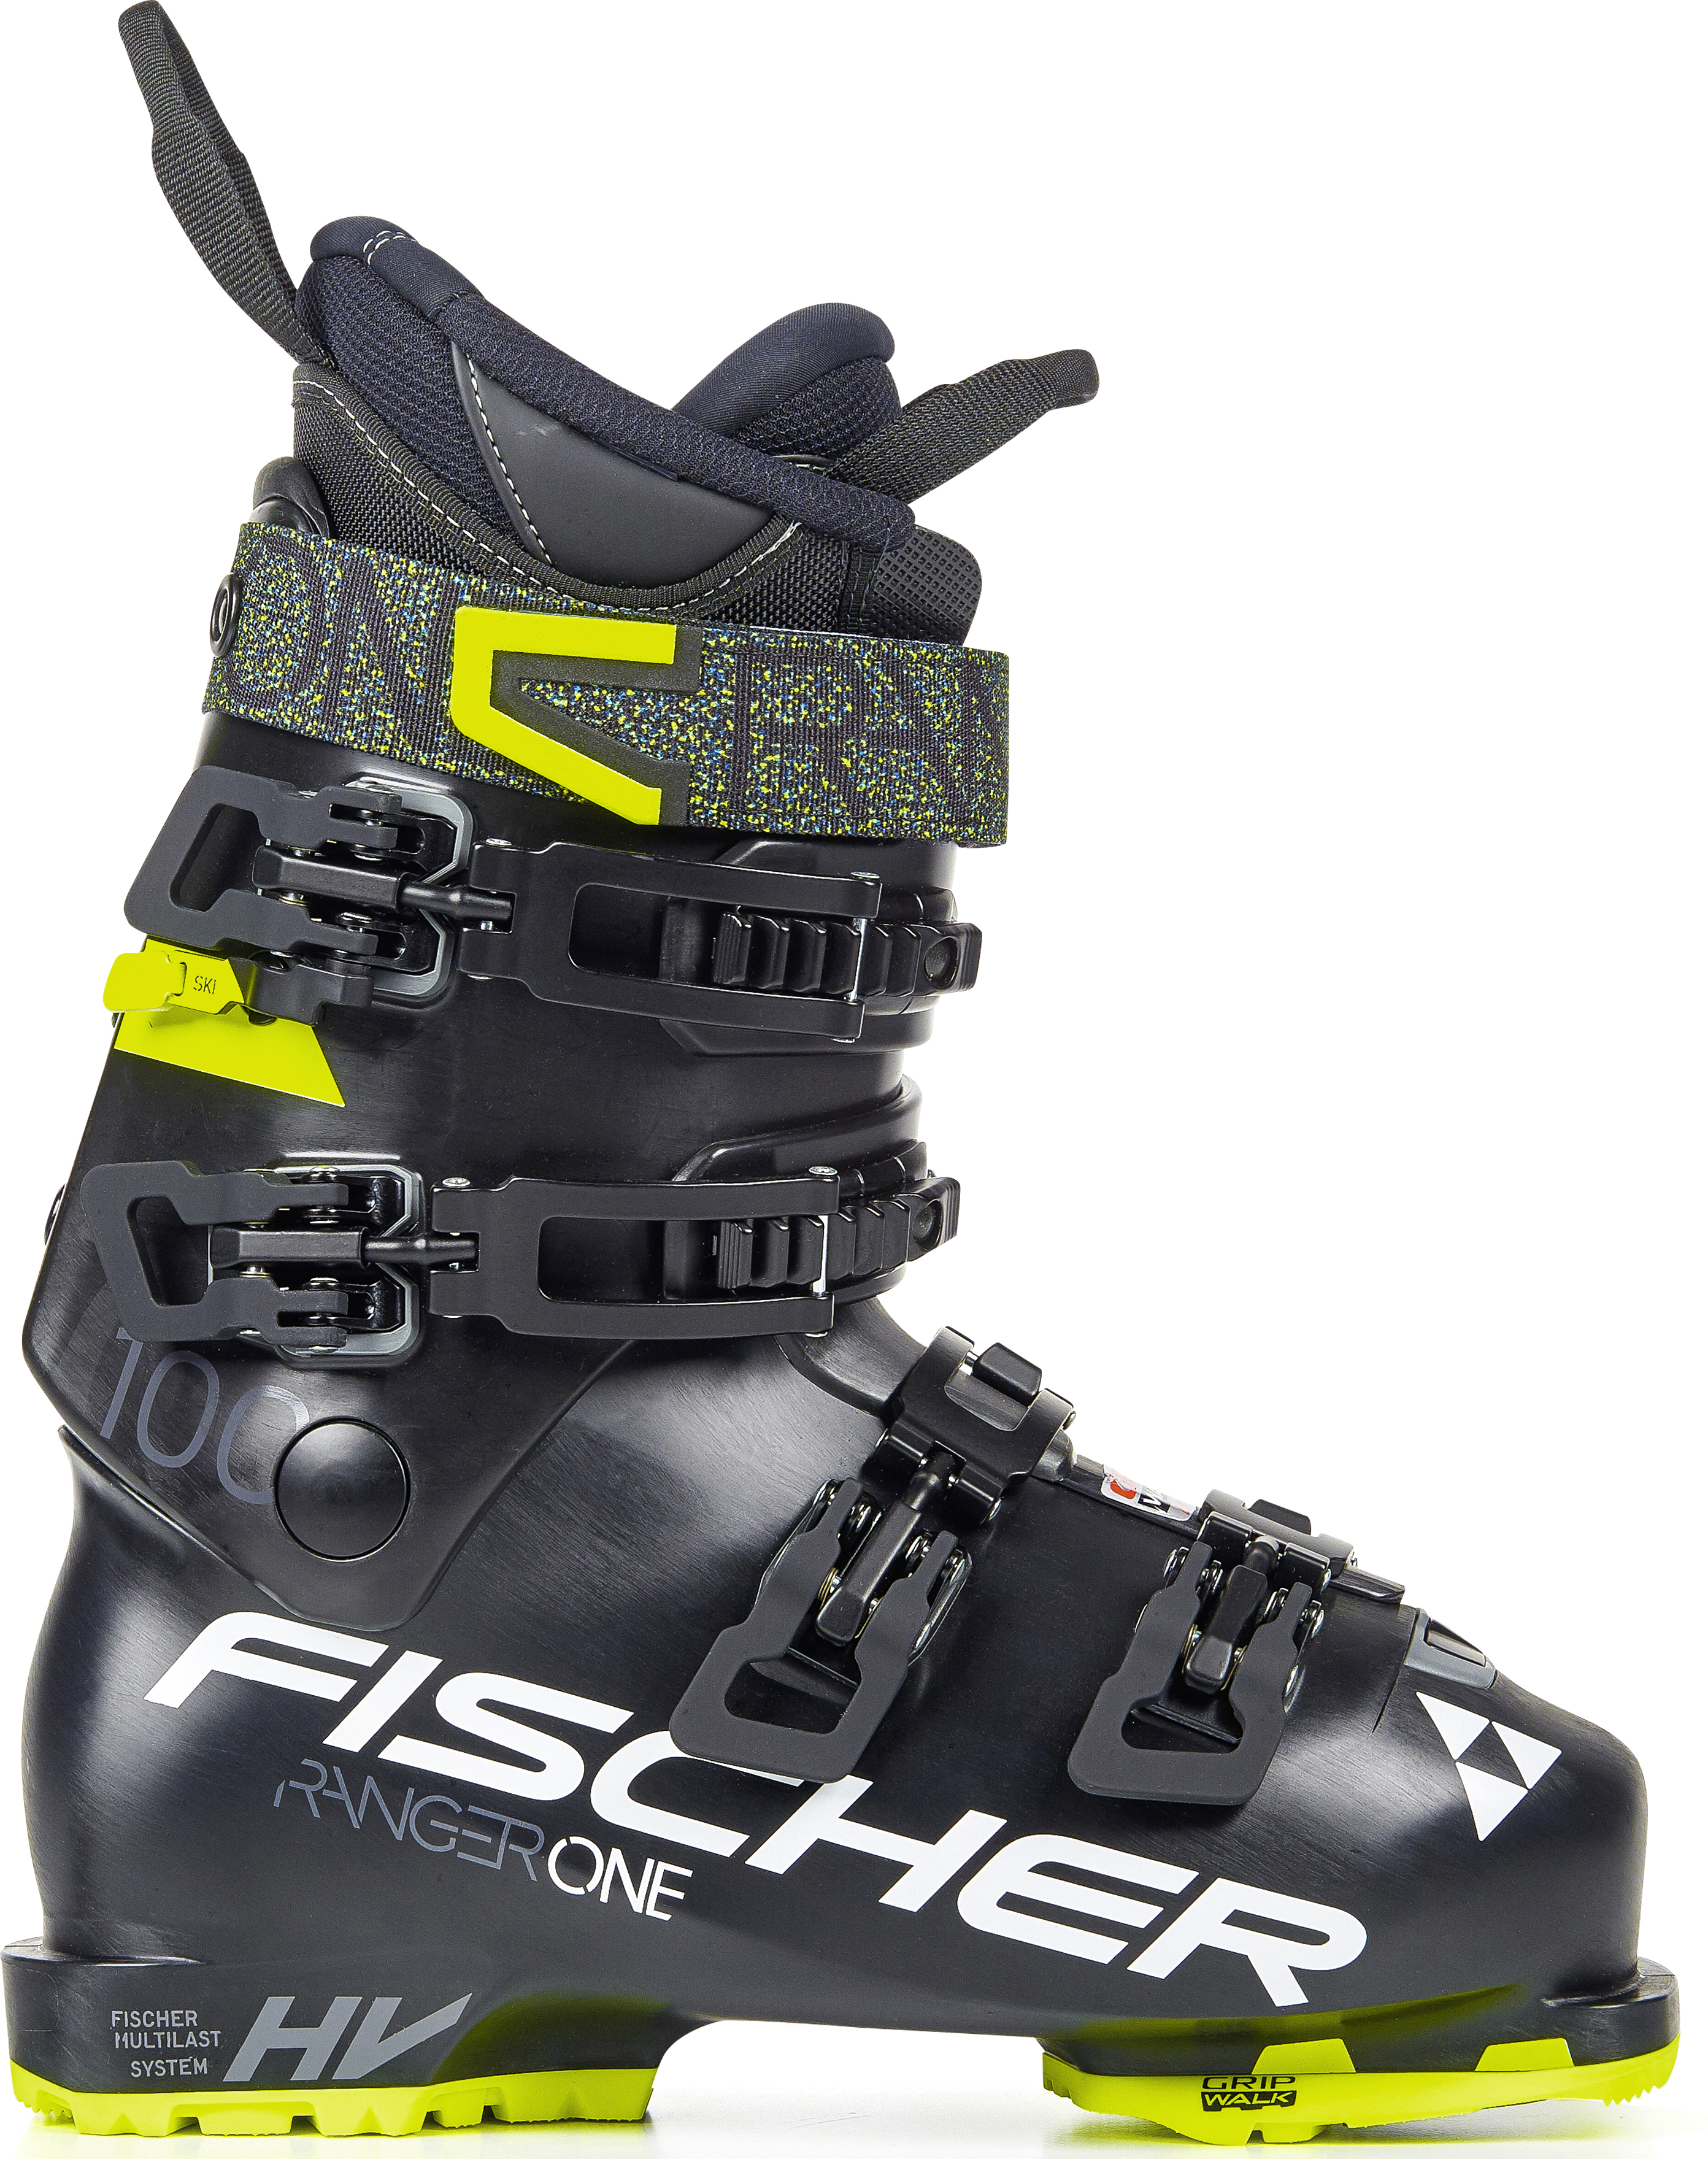 Универсальные лыжные ботинки Fischer Ranger One 100 Vacuum Walk 29.5